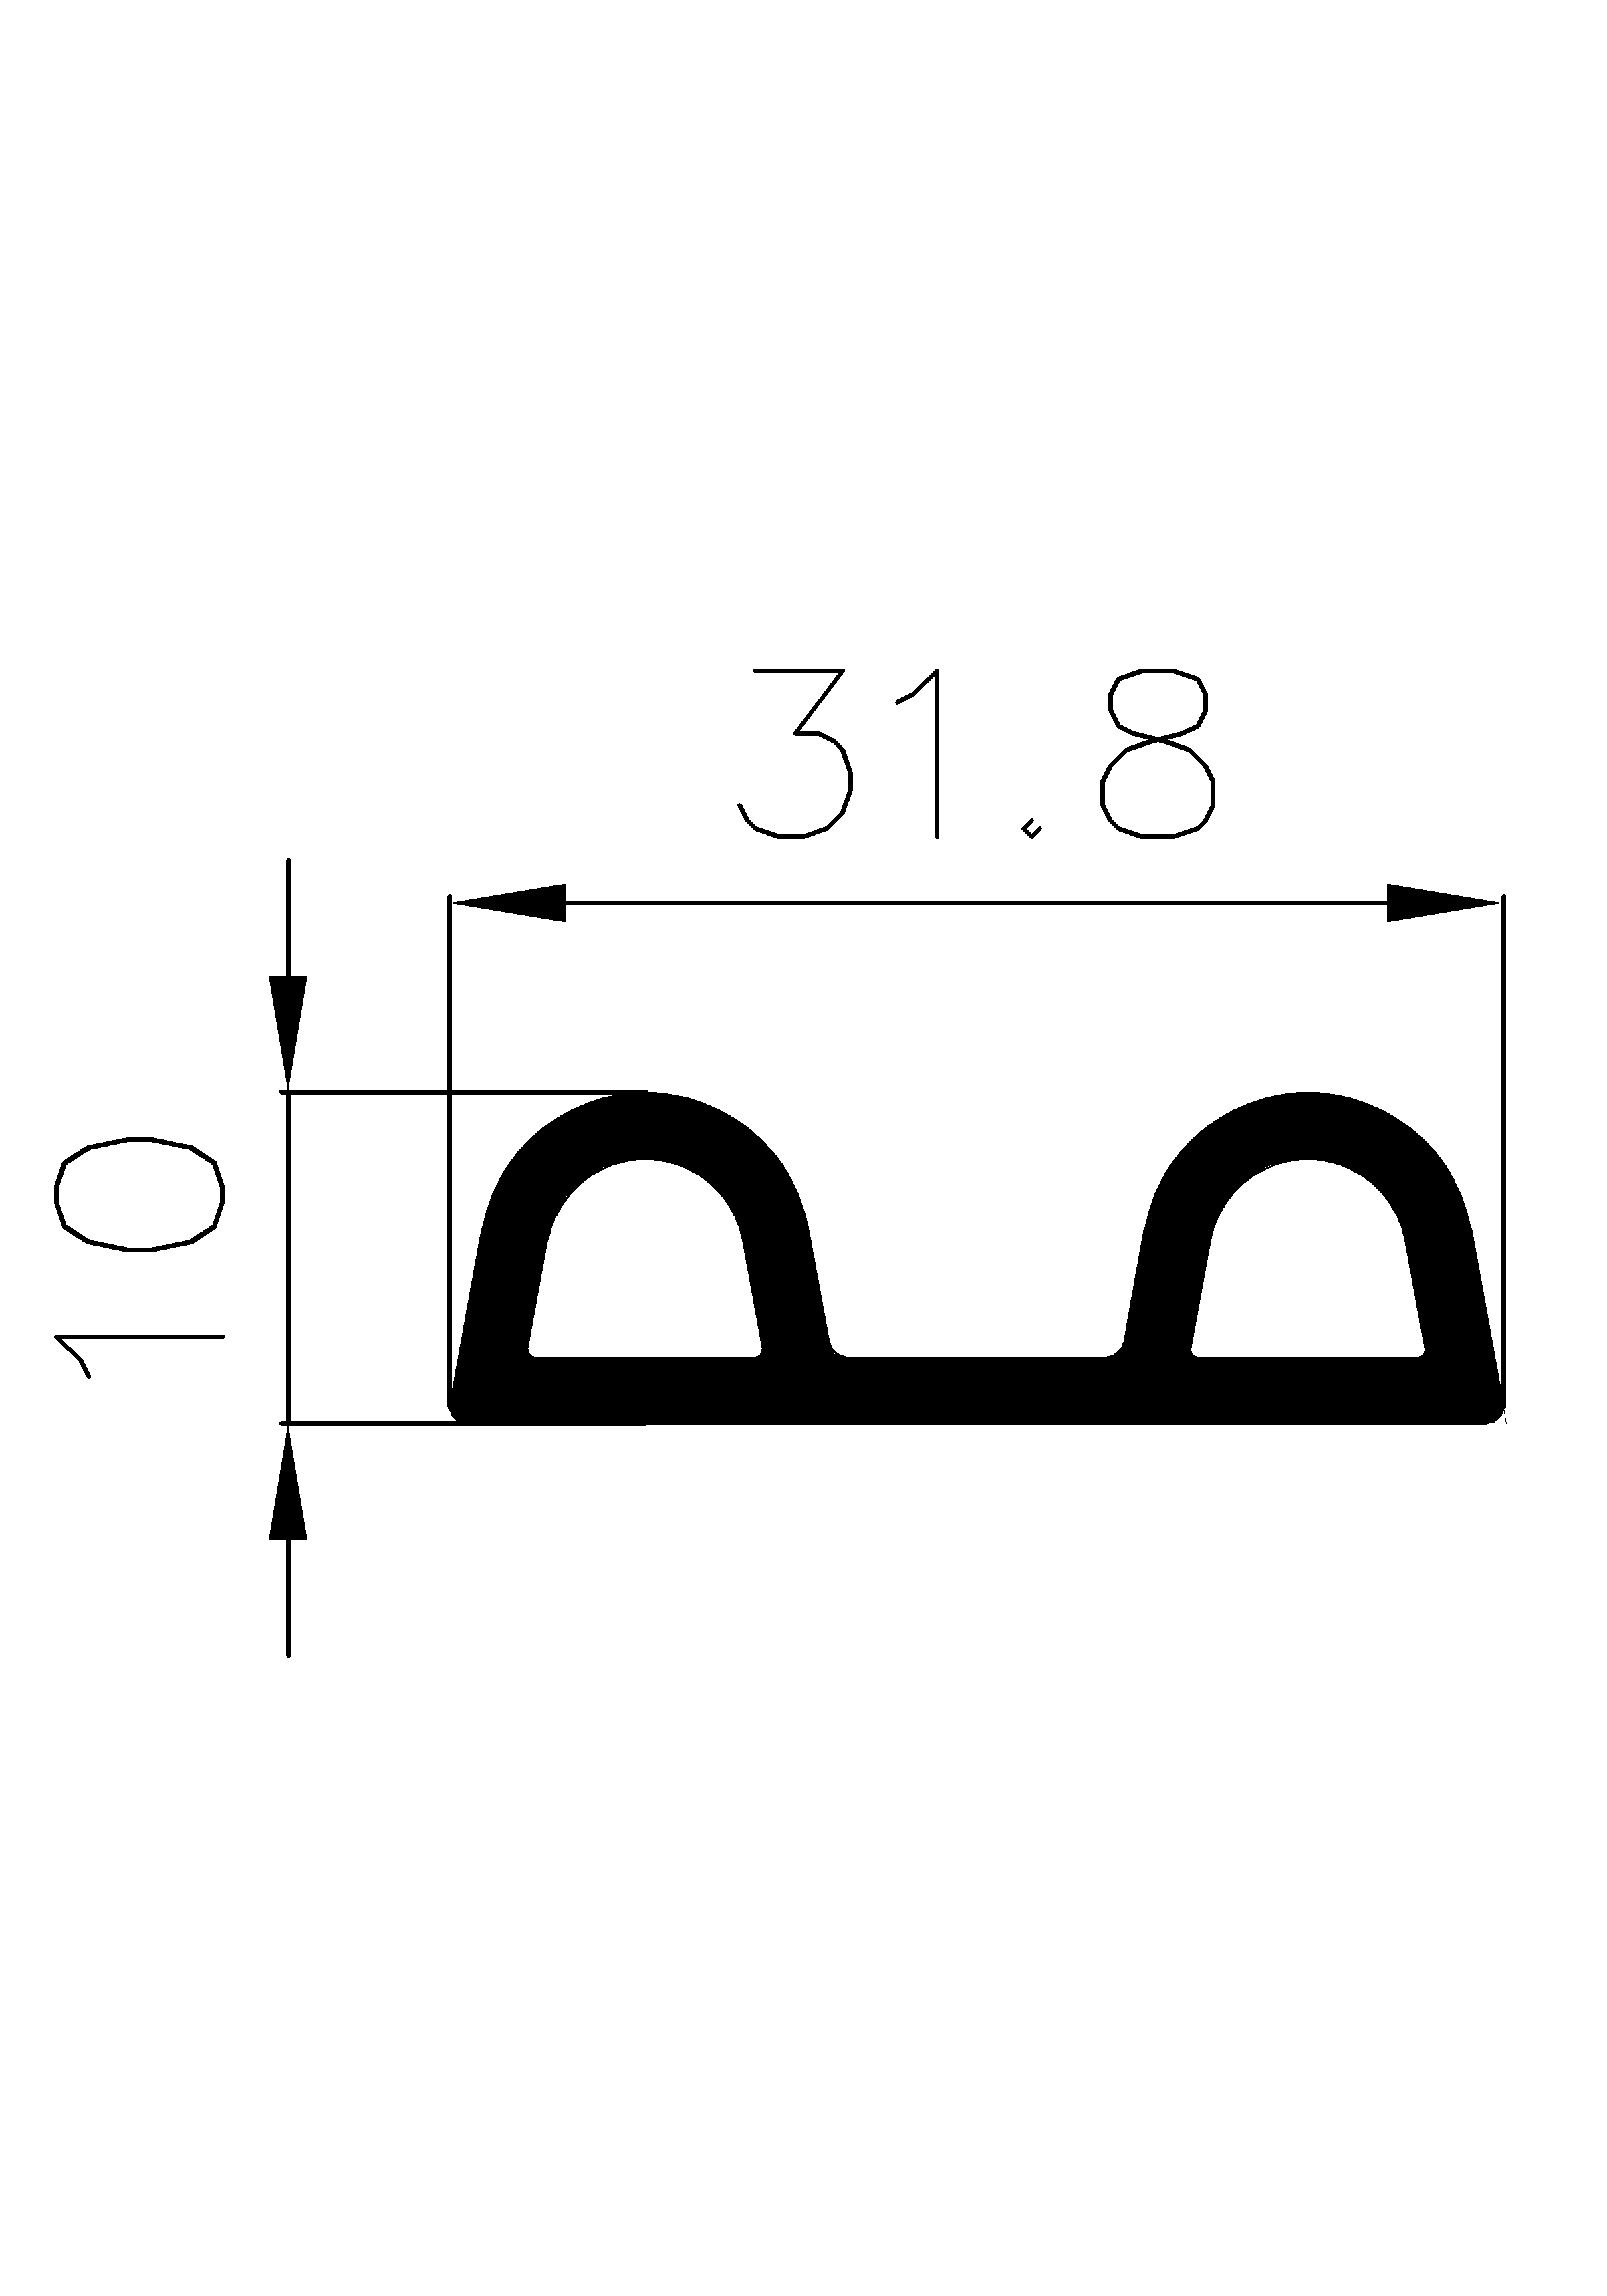 4040403KG - szivacs gumiprofilok - Lobogó vagy 'P' alakú profilok